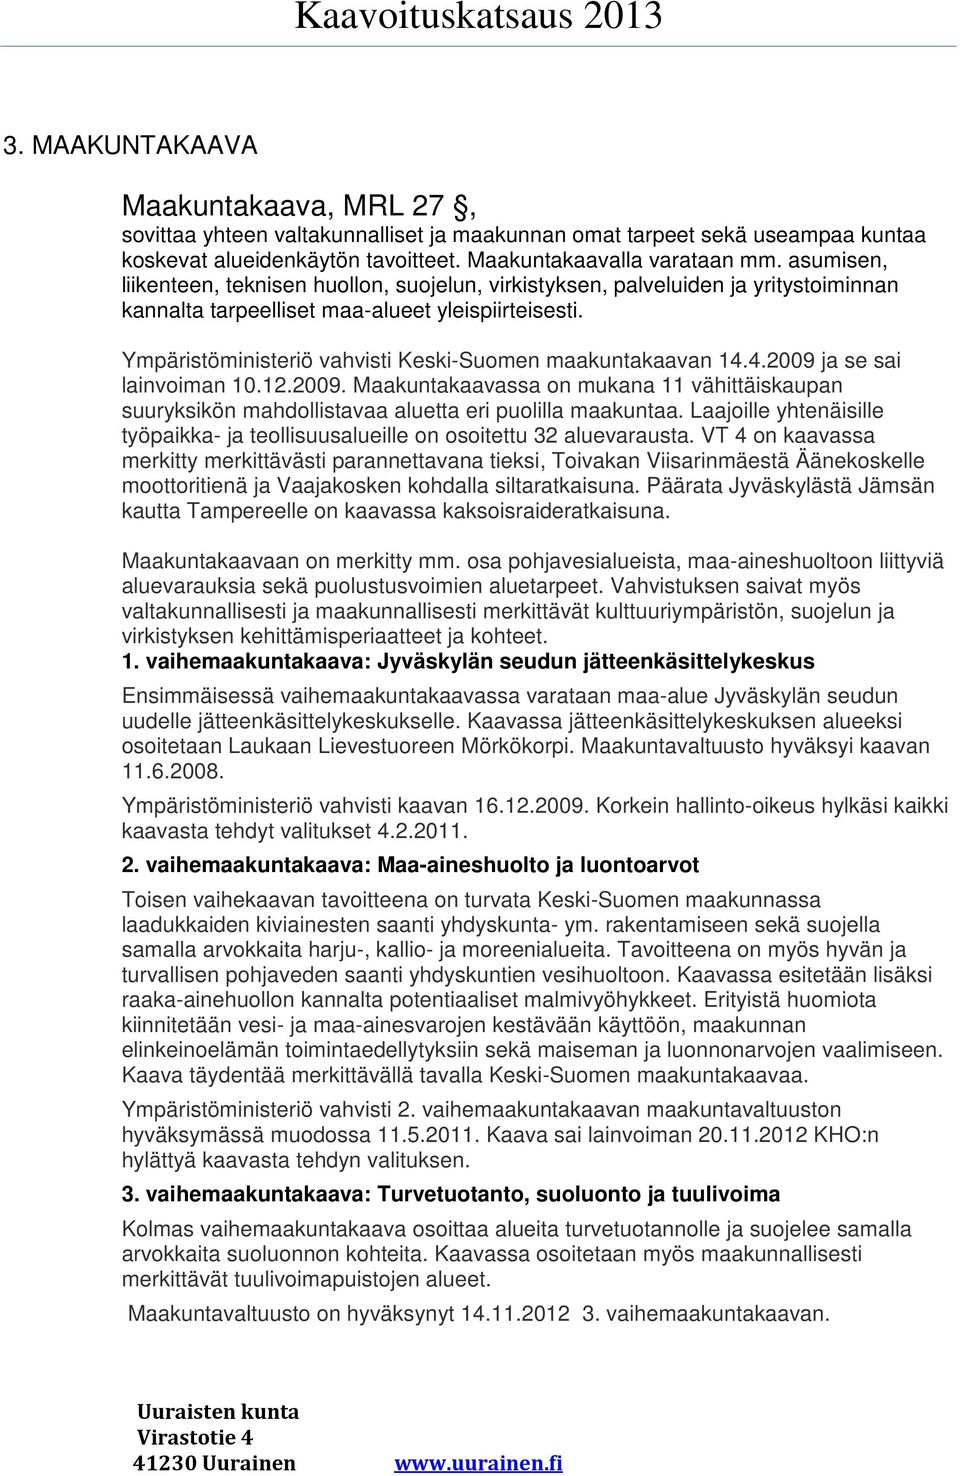 Ympäristöministeriö vahvisti Keski-Suomen maakuntakaavan 14.4.2009 ja se sai lainvoiman 10.12.2009. Maakuntakaavassa on mukana 11 vähittäiskaupan suuryksikön mahdollistavaa aluetta eri puolilla maakuntaa.